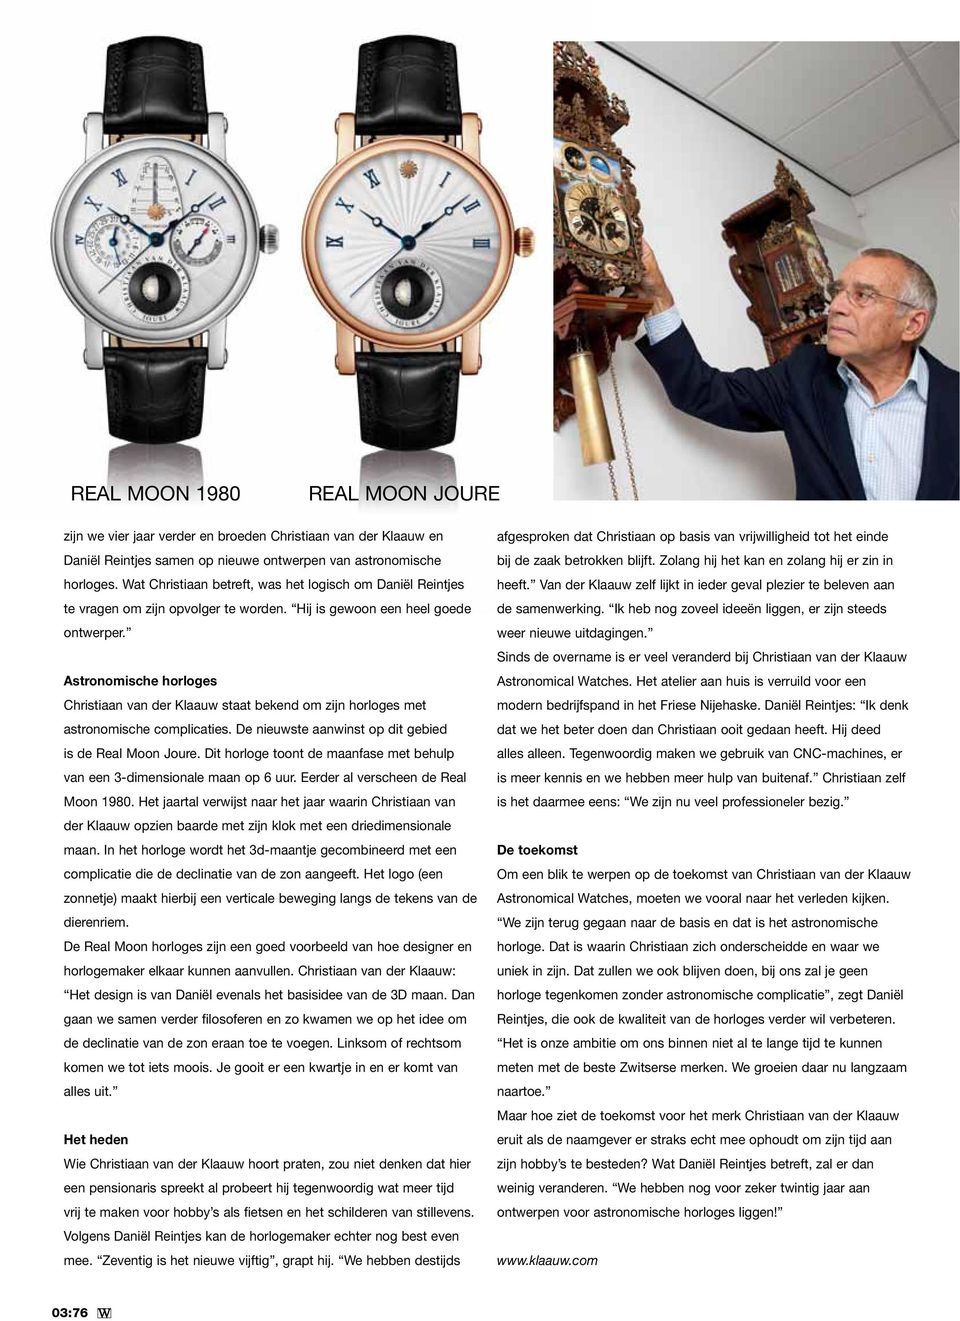 Astronomische horloges Christiaan van der Klaauw staat bekend om zijn horloges met astronomische complicaties. De nieuwste aanwinst op dit gebied is de Real Moon Joure.